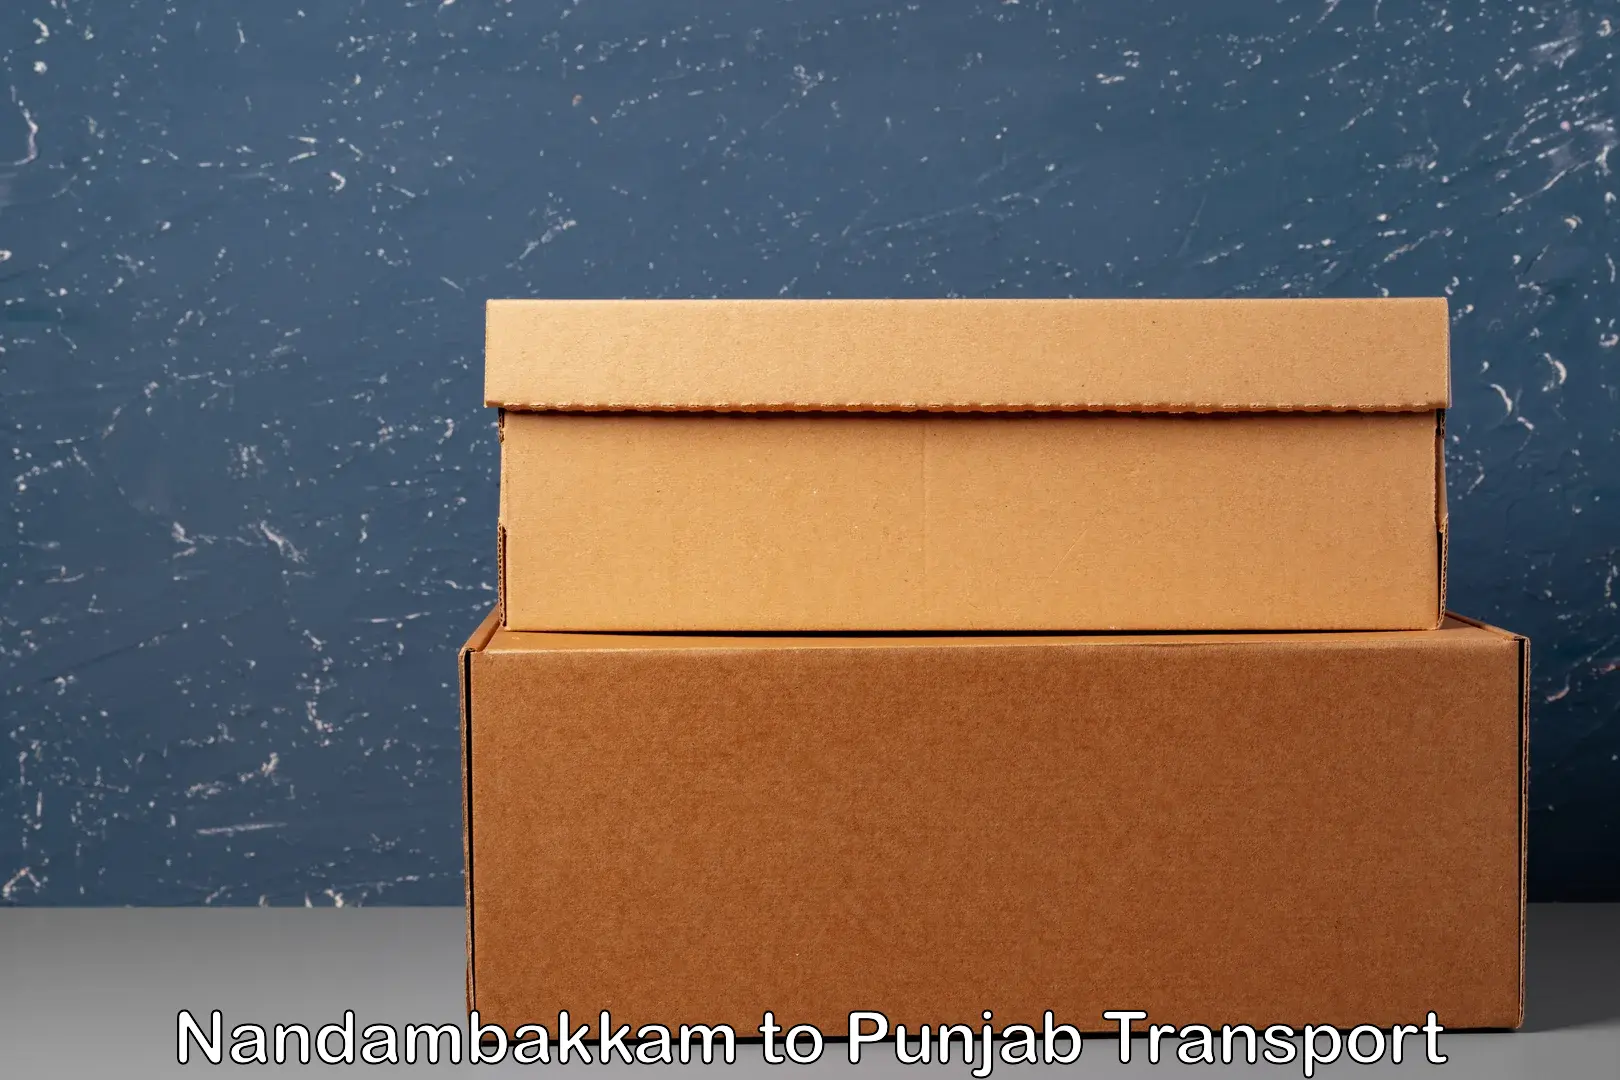 Transportation services Nandambakkam to Central University of Punjab Bathinda